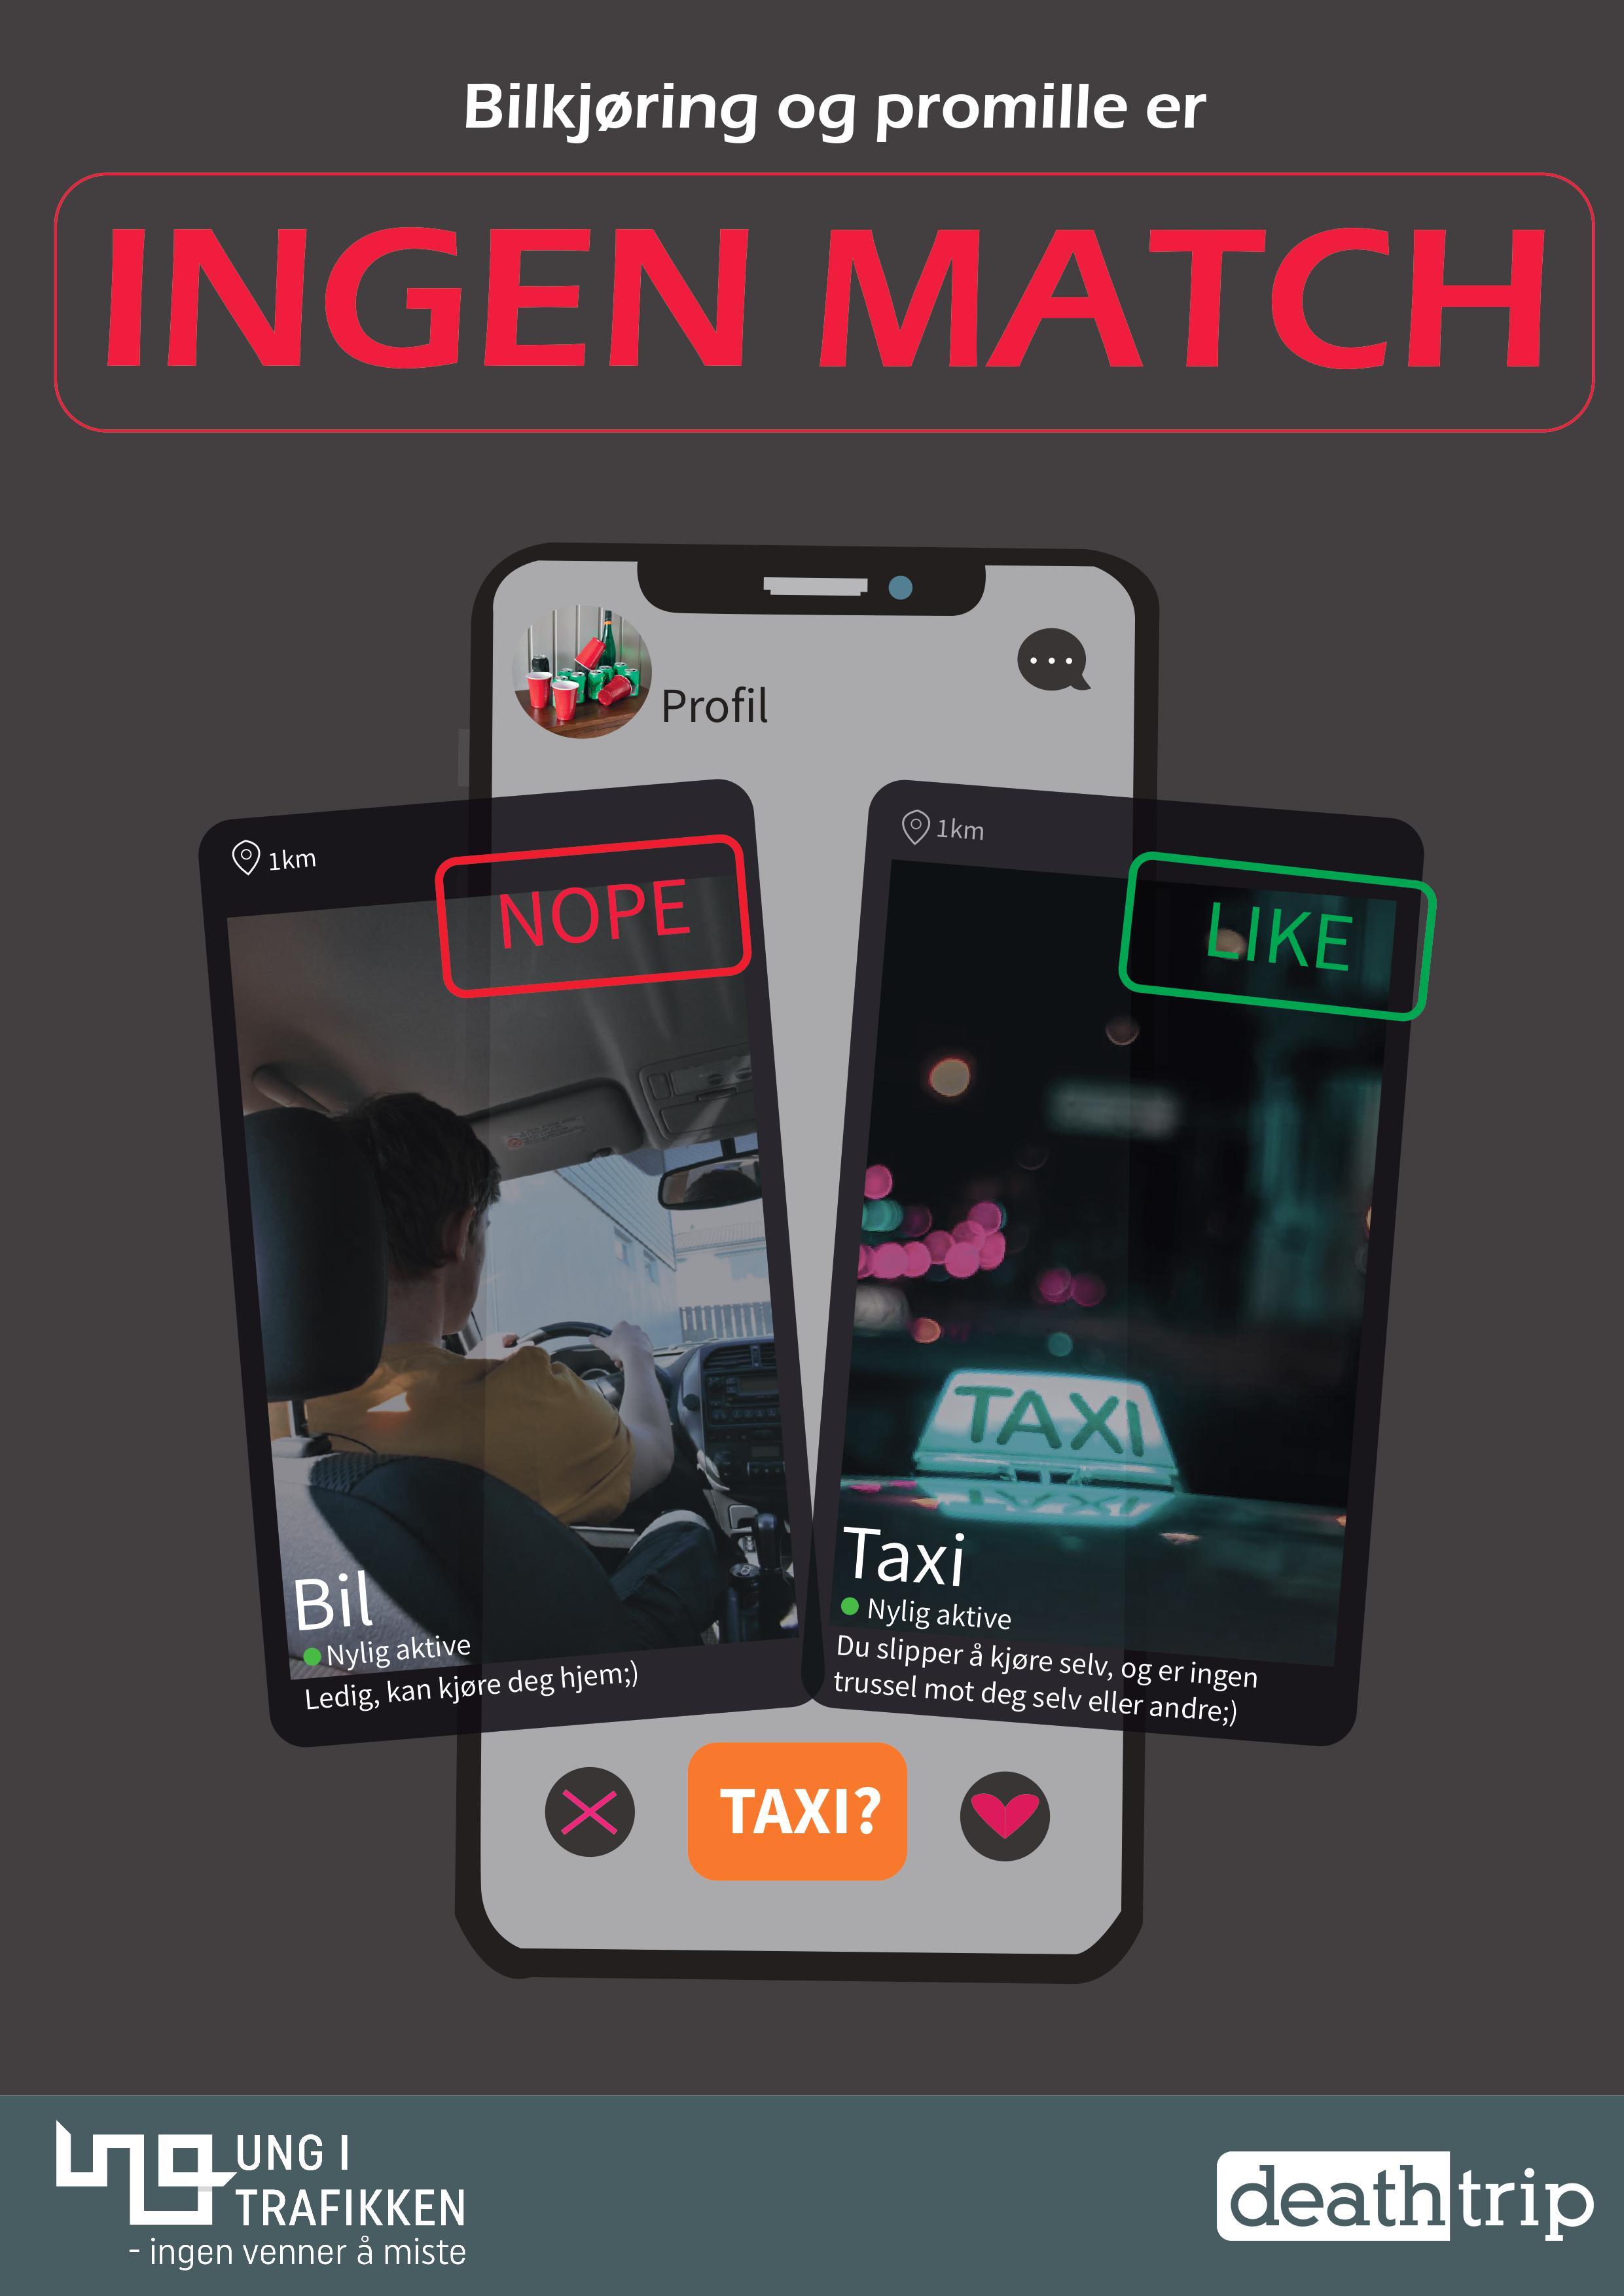 Plakat av mobil med datingapp med tekst: Bilkjøring og promille er ingen match.